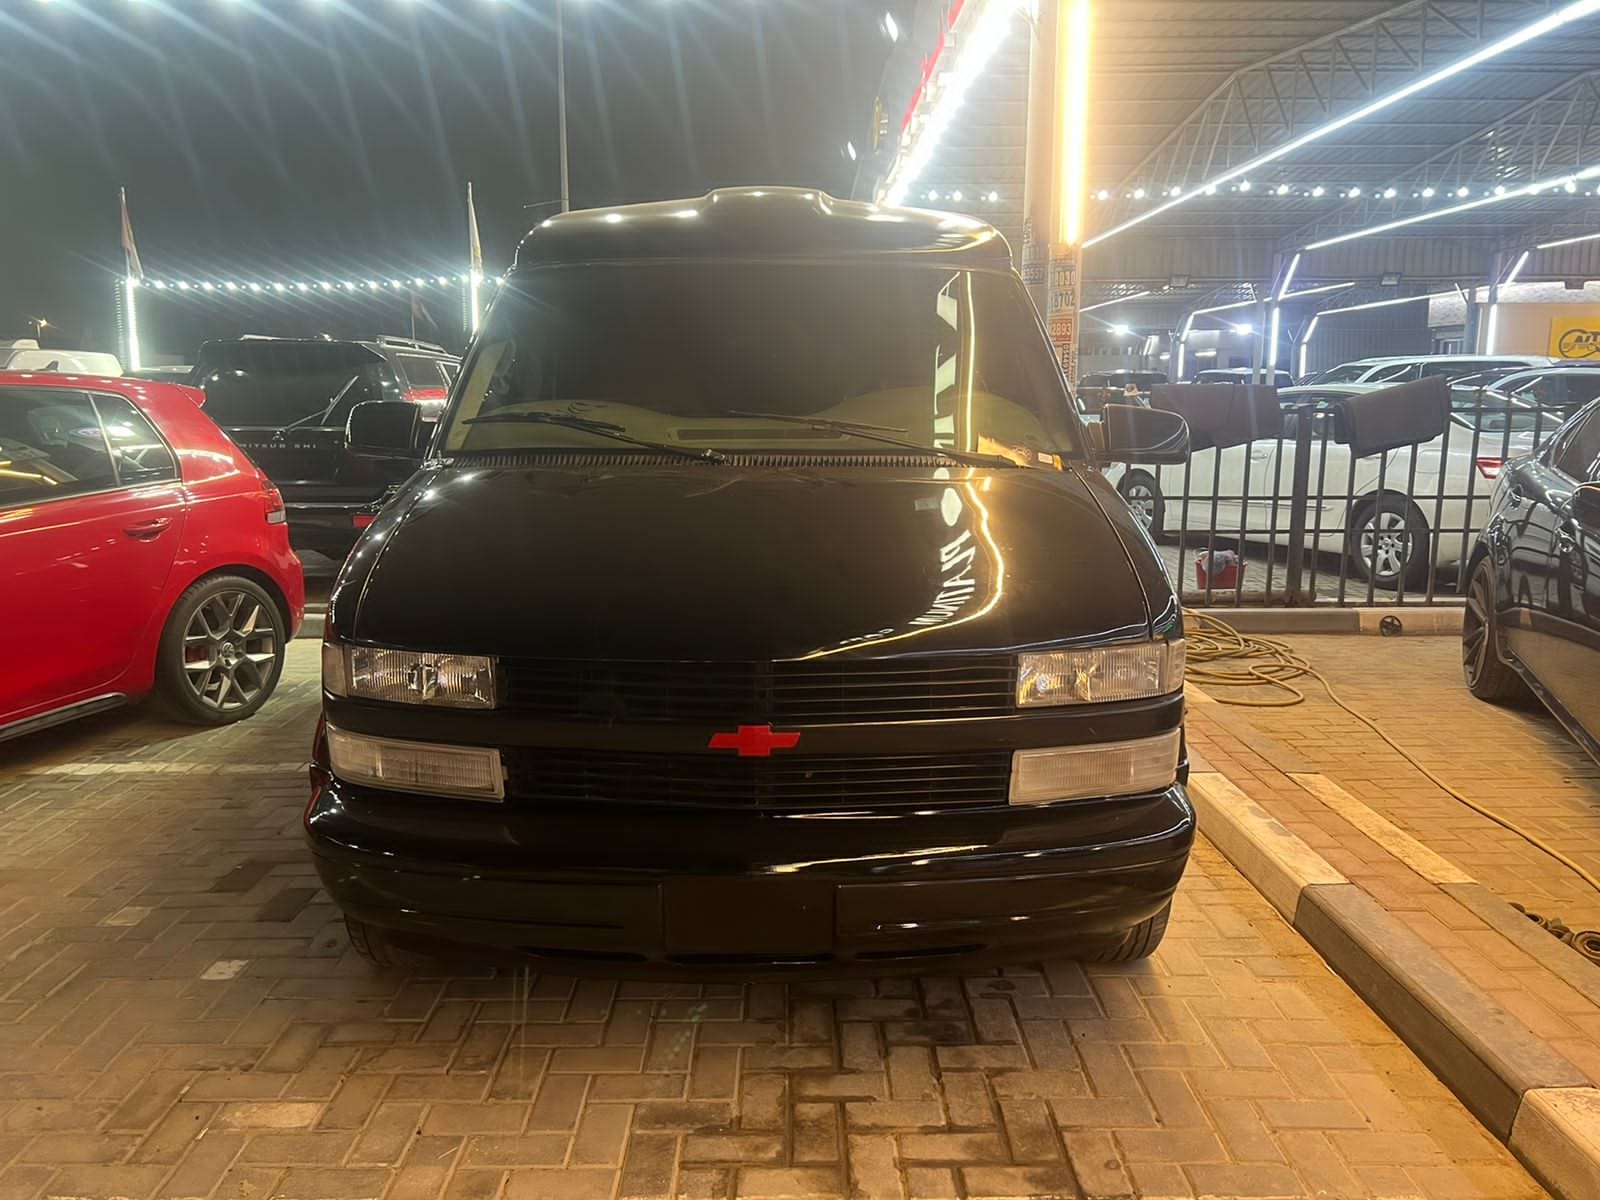 سيارات مستعملة رخيصة للبيع في دبي ابوظبي الشارقة الامارات